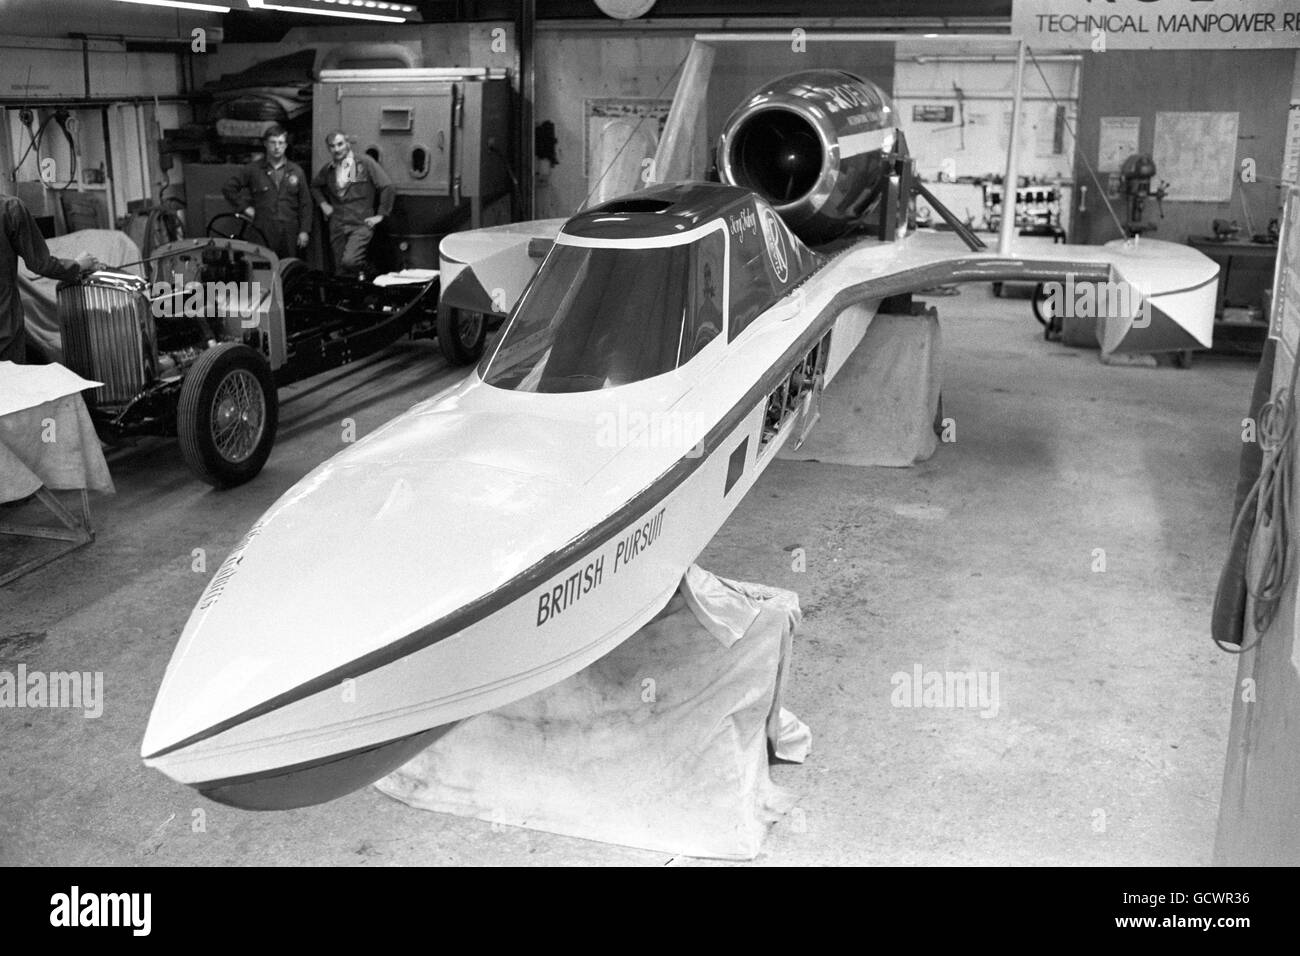 Miss Alton Towers, le hors-bord propulsé par jet, dans lequel Tony Fahey espère battre le record mondial de vitesse de l'eau de 319.627 km/h détenu par l'australien Ken Warby, établi en 1978. Banque D'Images